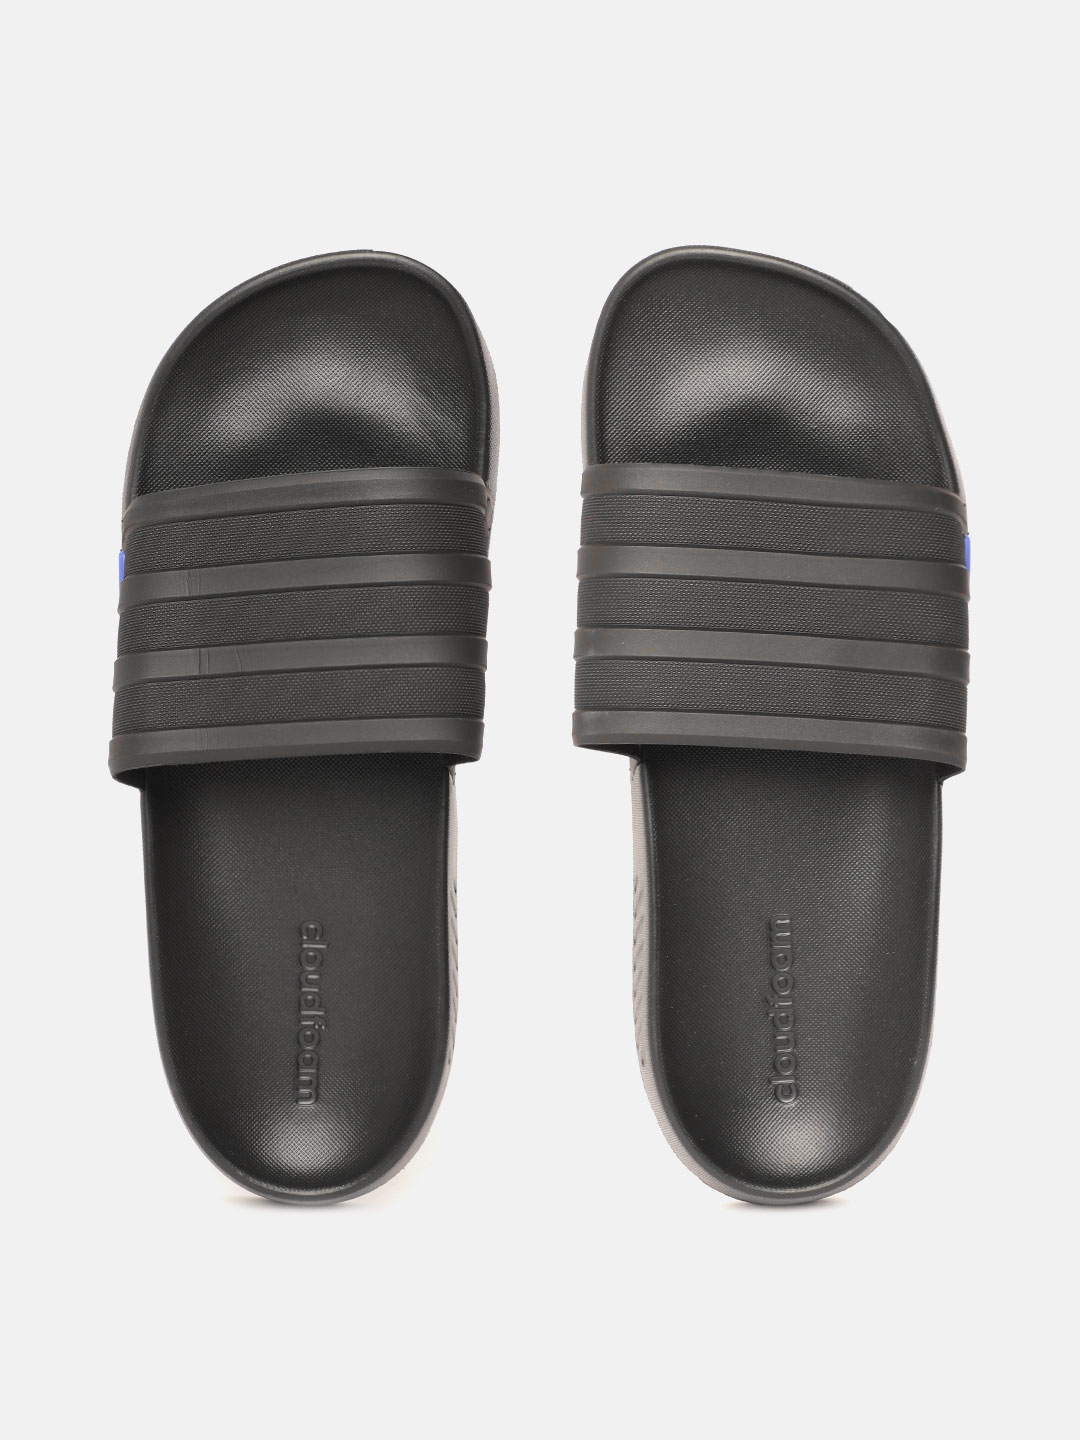 Buy ADIDAS Unisex Black Striped Iconic Runner Sliders - Flip Flops for ...